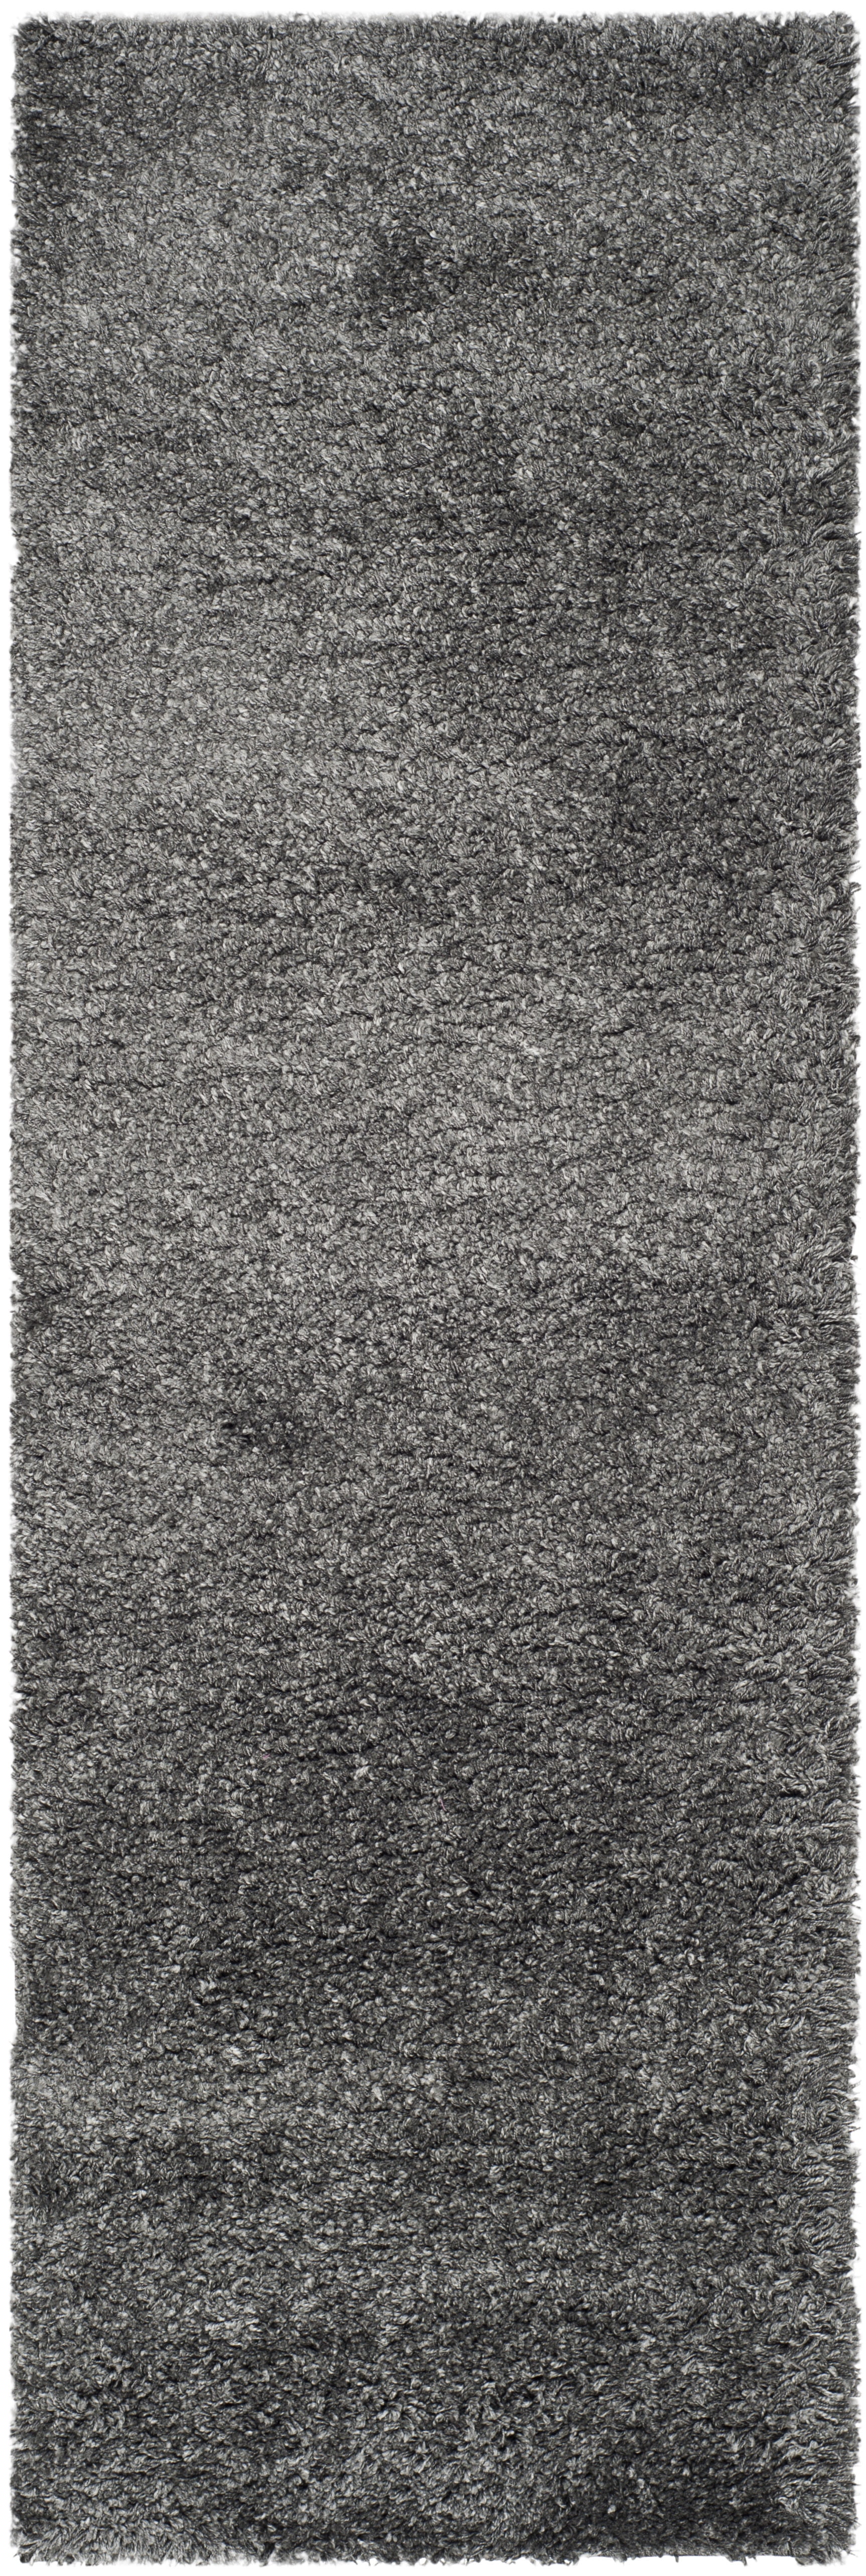 SAFAVIEH California Solid Plush Shag Runner Rug, Dark Grey, 2'3" x 13' - image 3 of 11